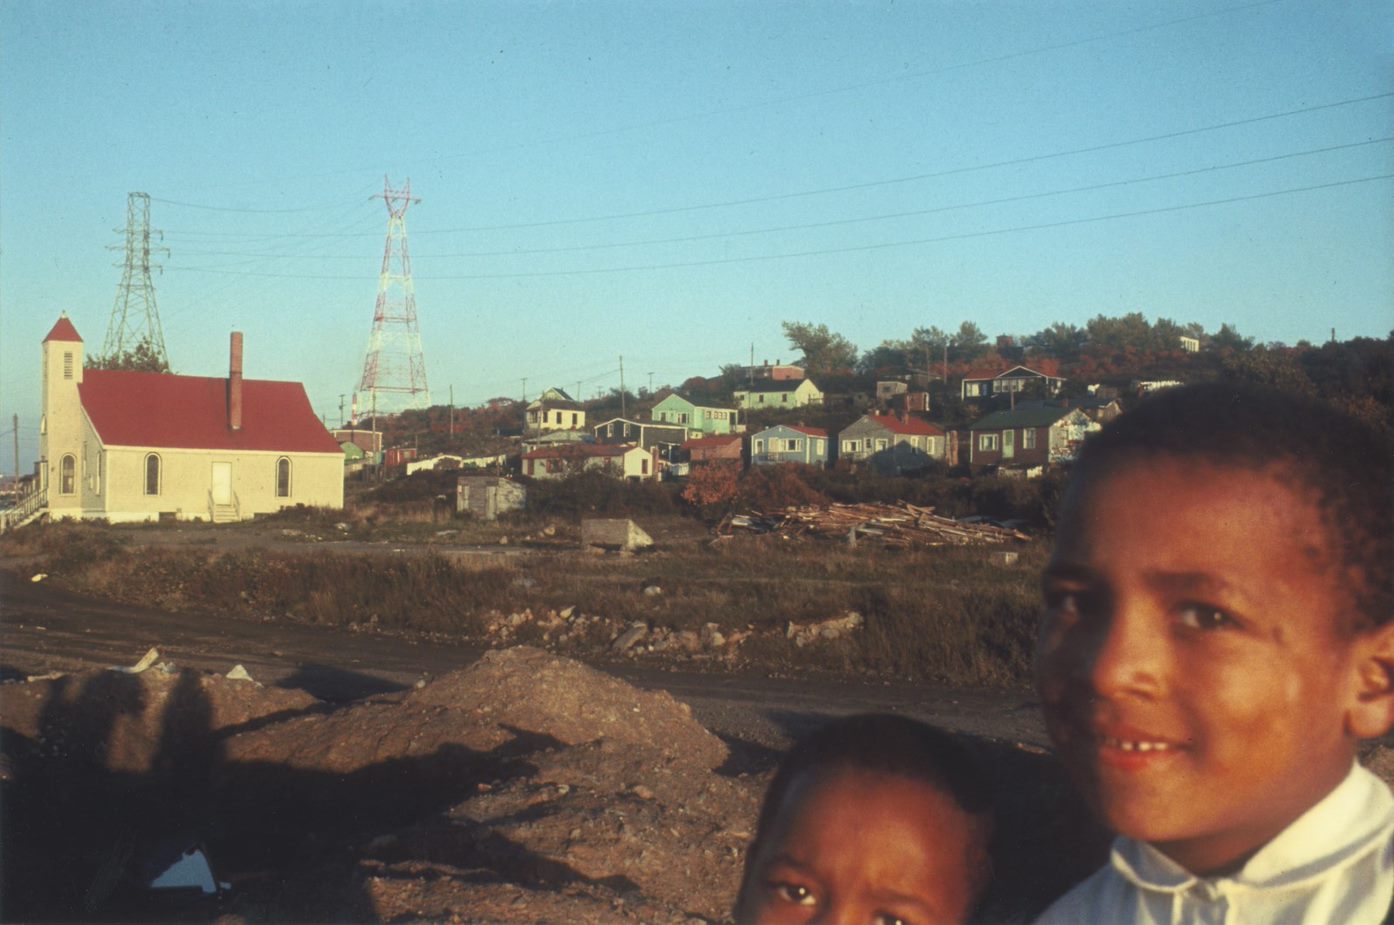 Colour photograph of two children in foreground, with white clapboard church in background. - Une photographie en couleur de deux enfants au premier plan avec une église à clins blancs à l’arrière-plan.